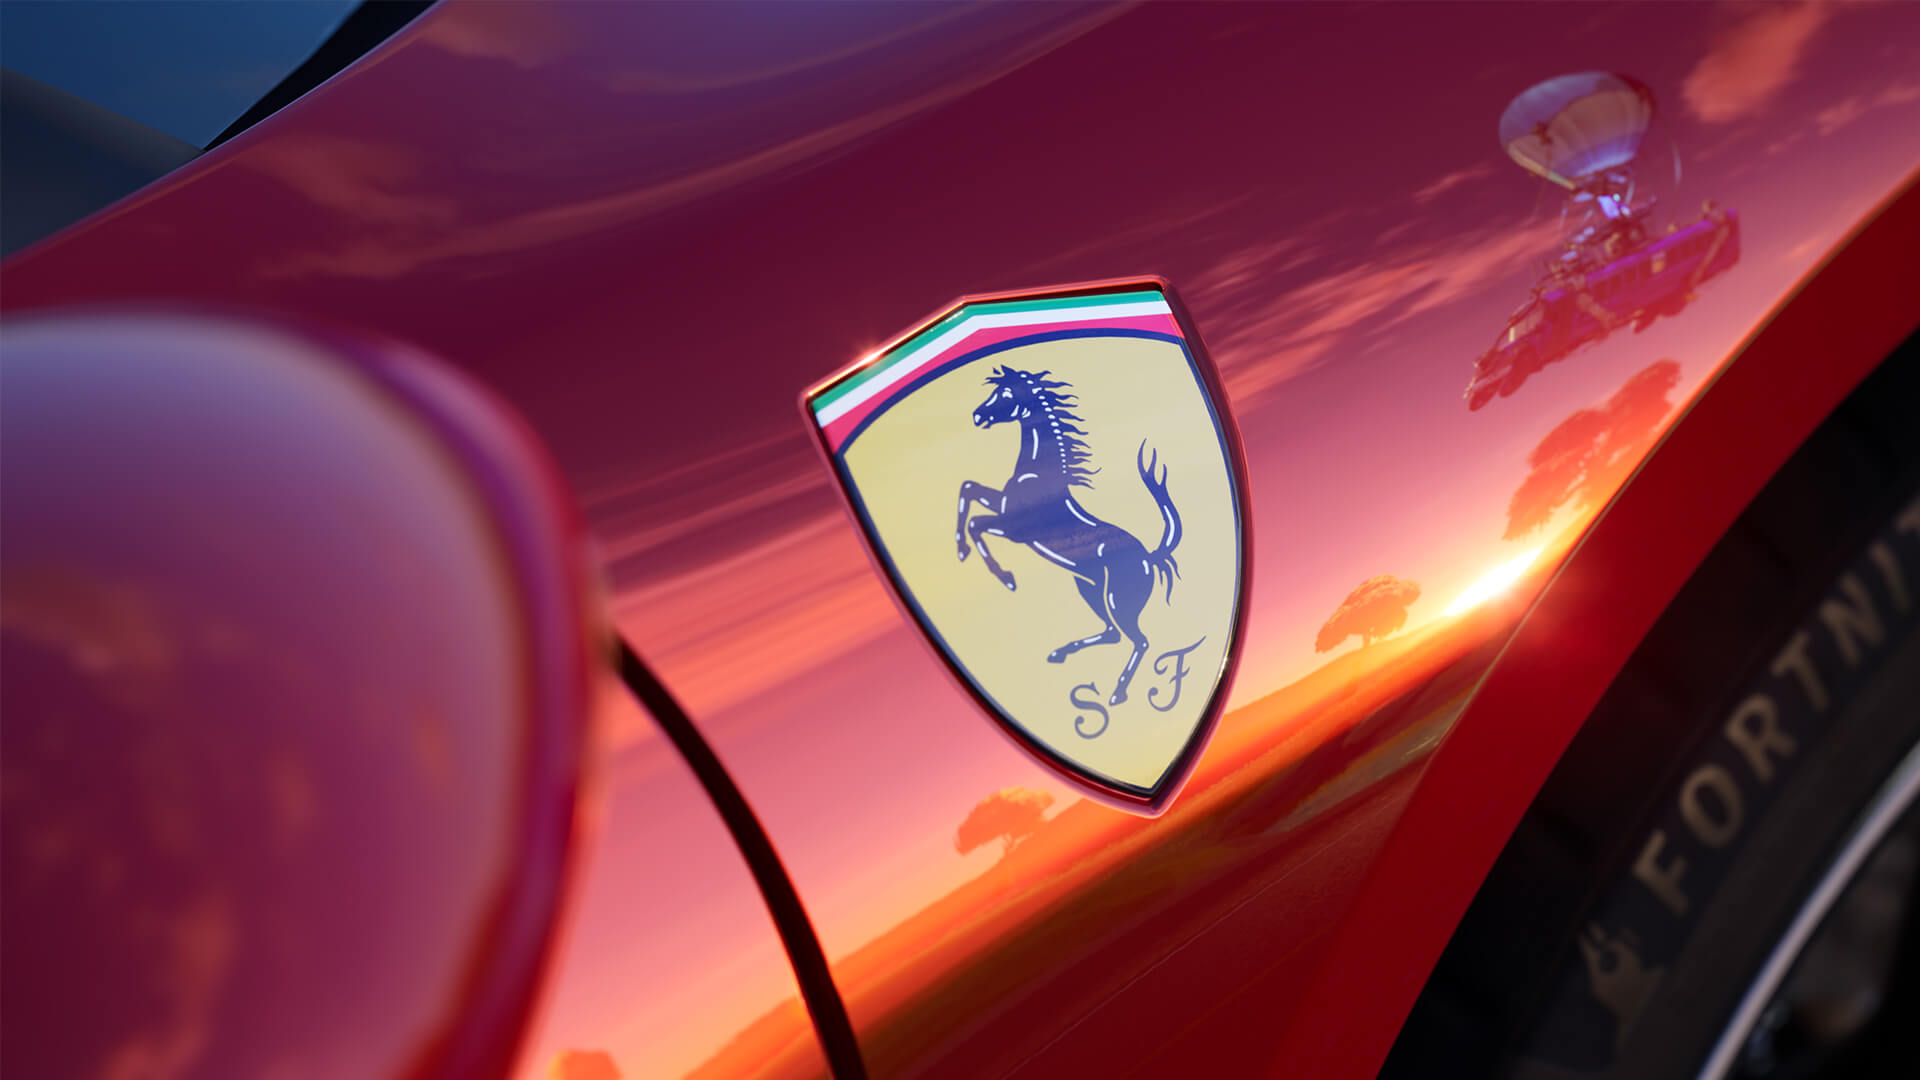 Test Drive The Ferrari 296 GTB in Fortnite